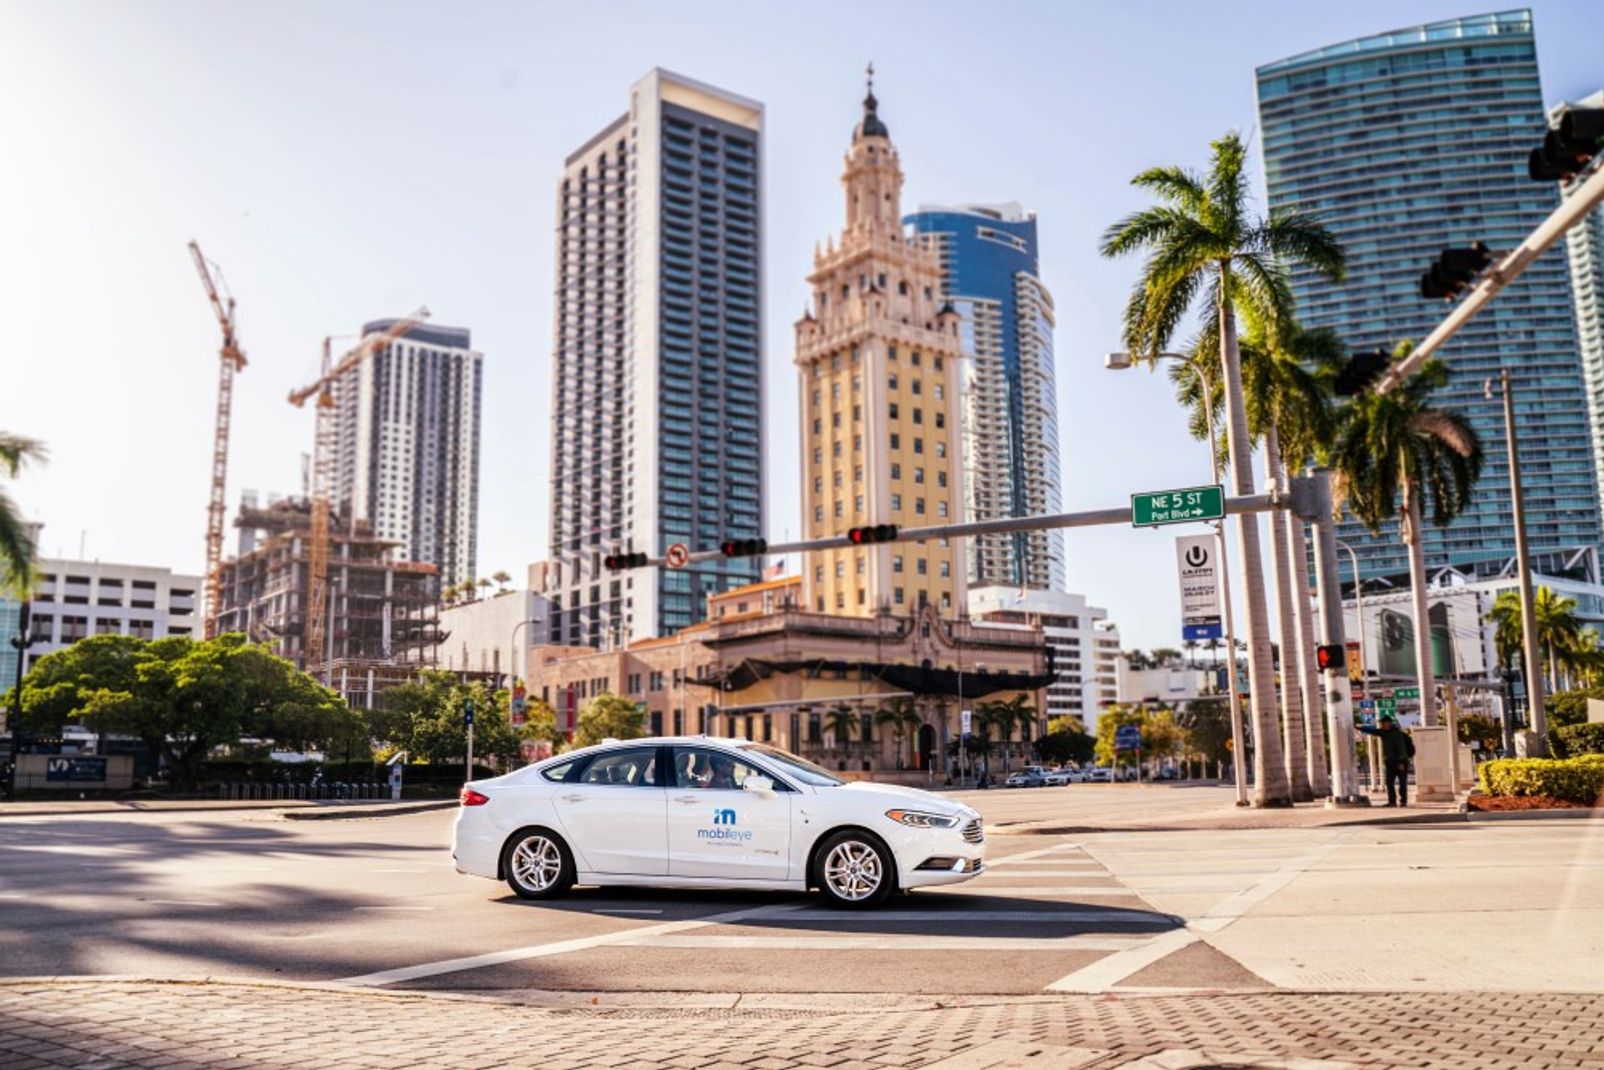 Mobileye autonomous vehicle testing in Miami, Florida